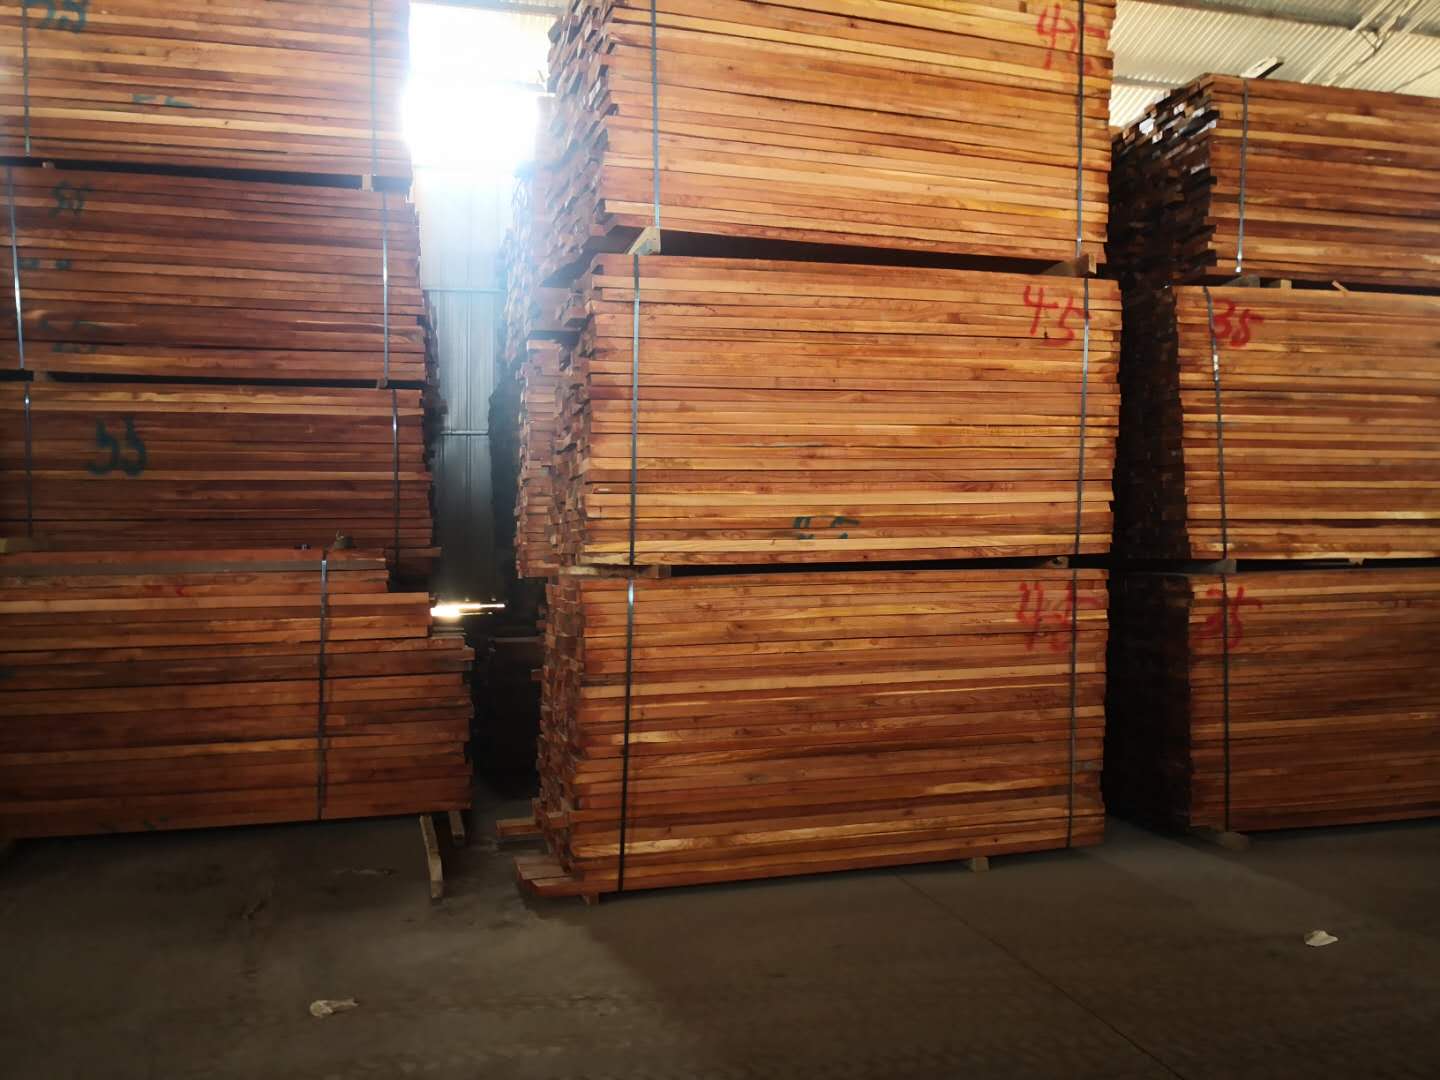 实木红椿木板材 蒸汽烘干热板材 压定型红椿木 实木家具材料 蒸汽烘干热红椿木板材 河南红色木材